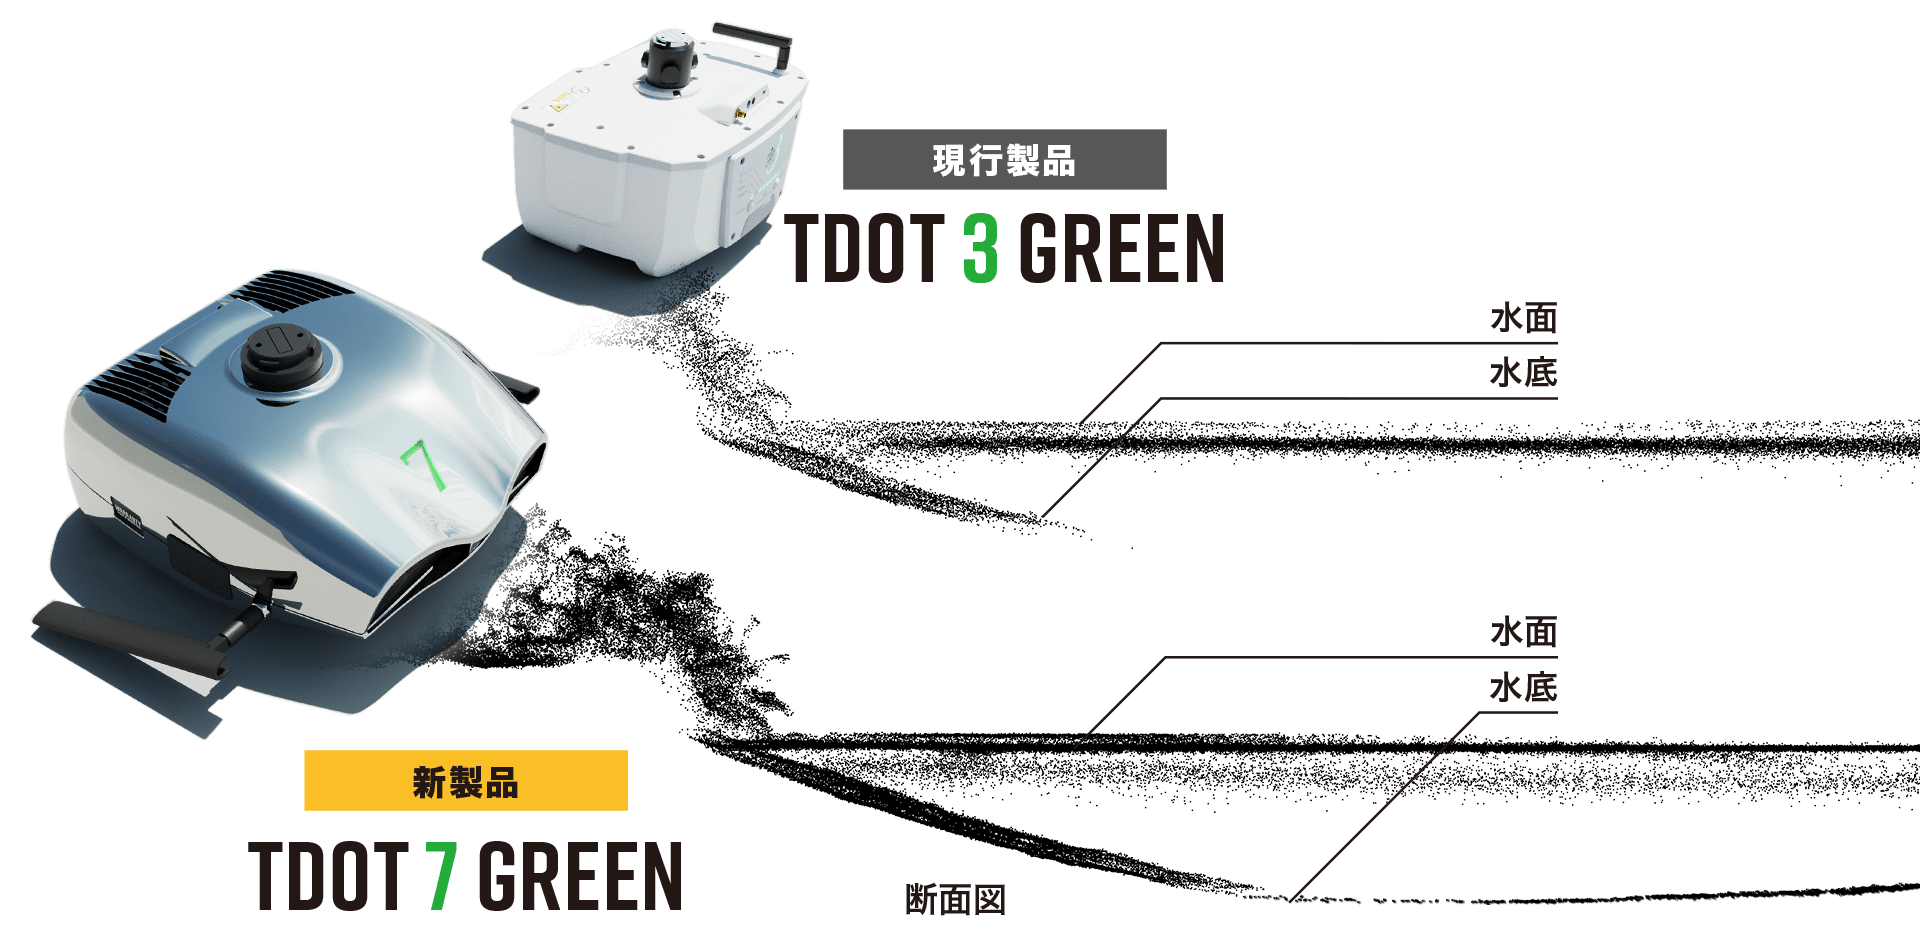 グリーンレーザーシステム「 TDOT 7 GREEN 」比較